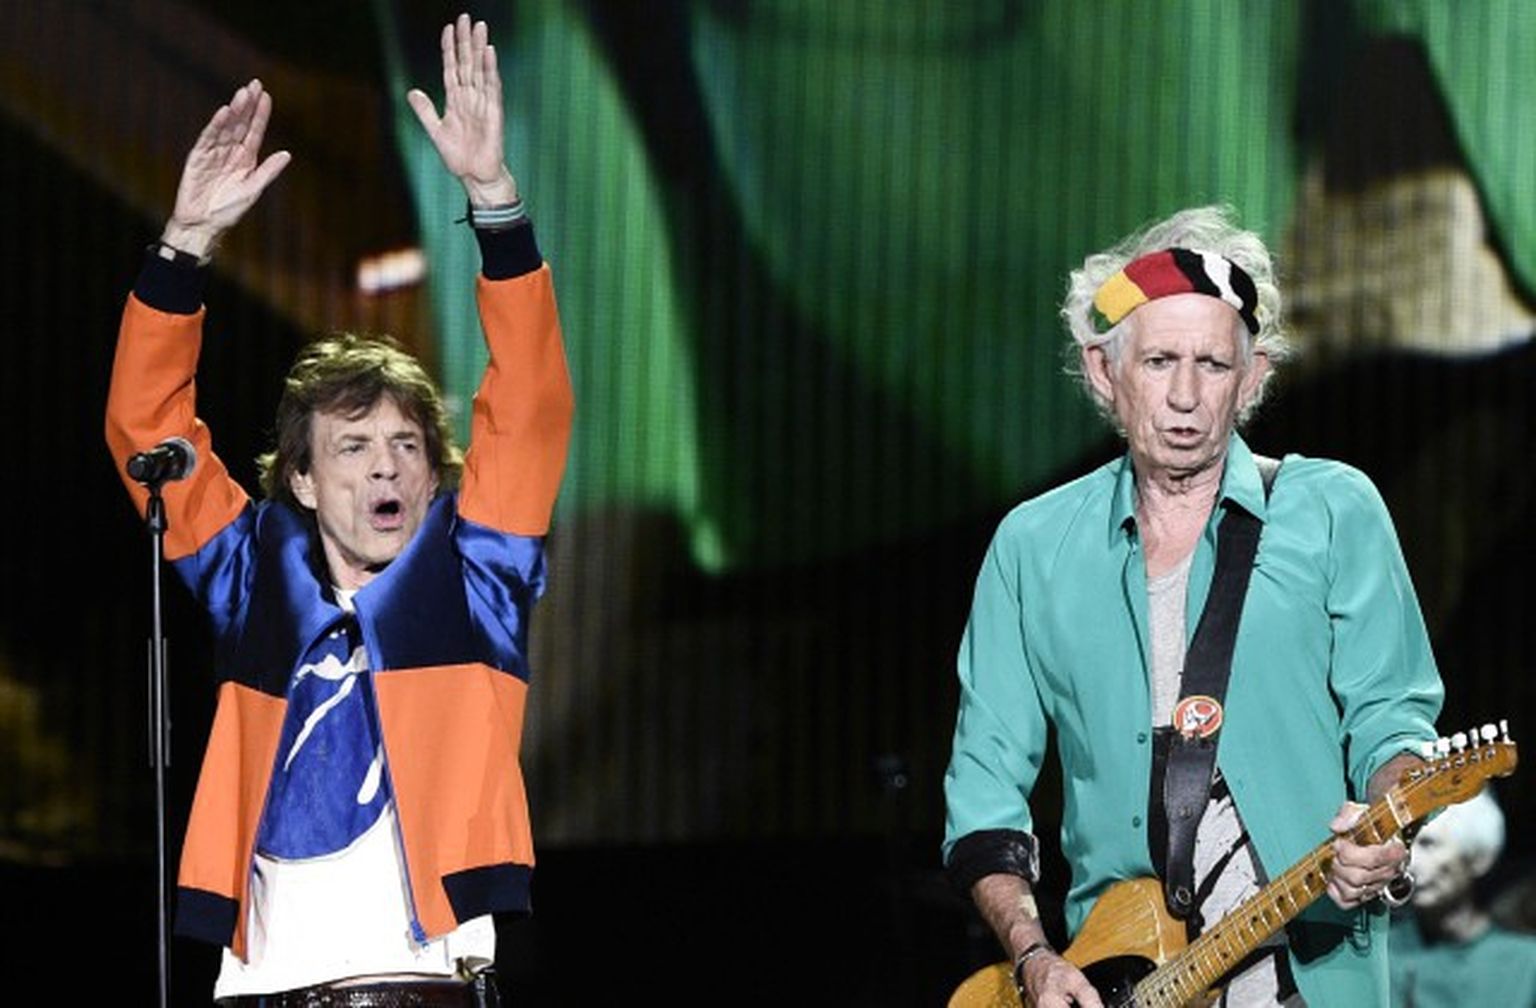 Miks Džegers (Mick Jagger) un Kīts Ričardss (Keith Richards) no grupas "The Rolling Stones" uzstājas festivālā "Desert Trip"